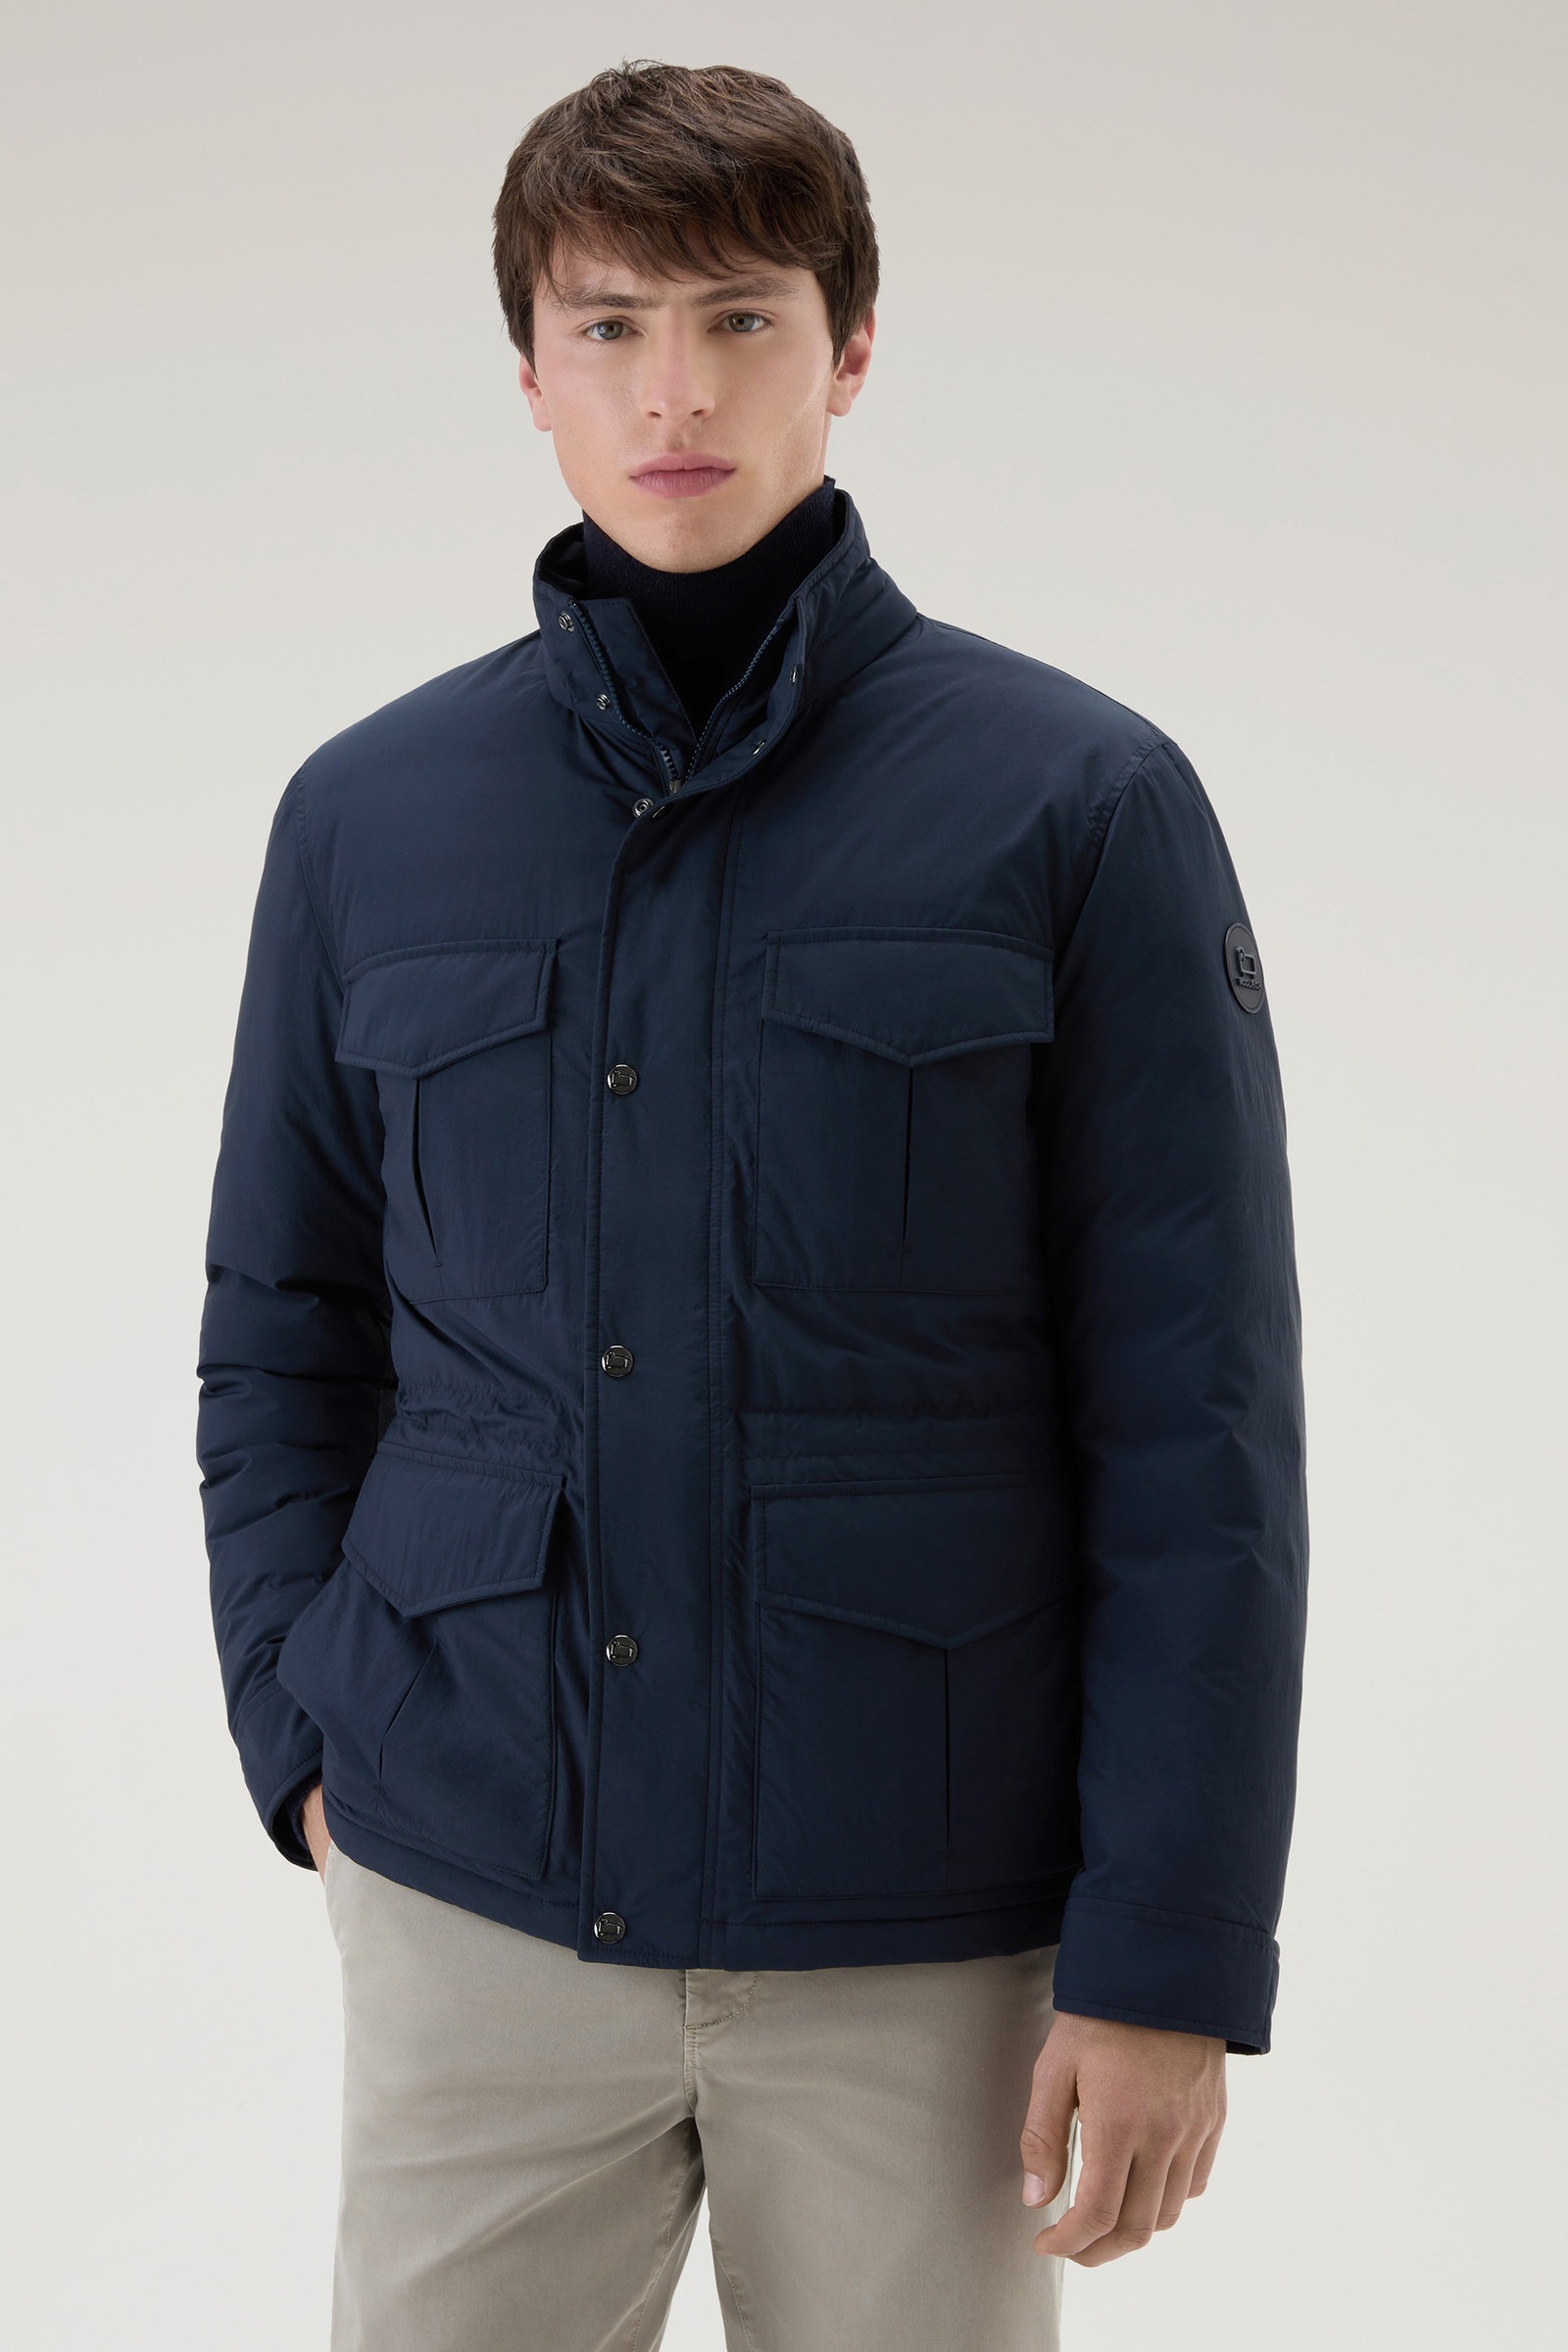 Woolrich Nylon | Hood Blue USA Aleutian with Jacket in Taslan Field Detachable Men\'s